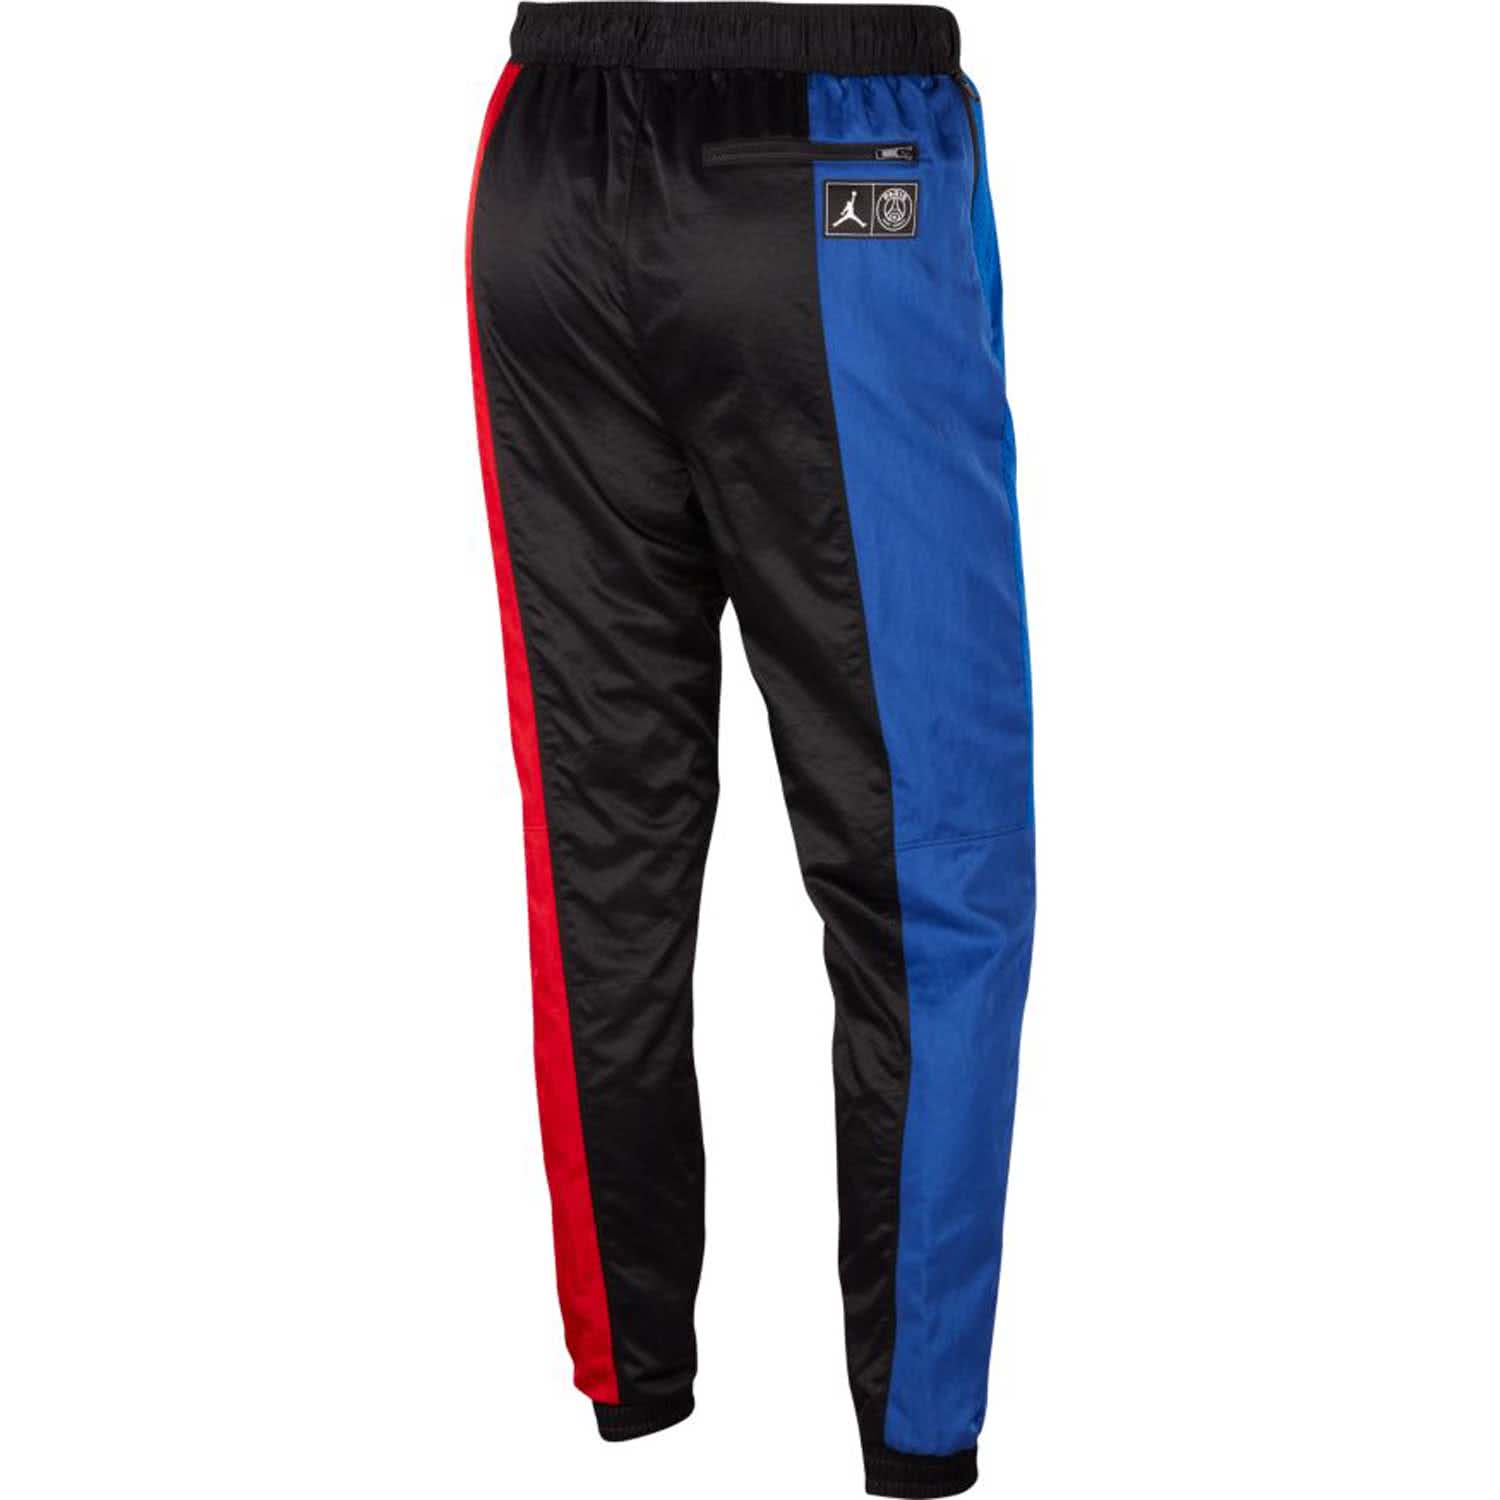 Jordan Herren Paris St Germain Trainingshose Air Jordan Suit Pant Bq8374 011 L Black Gm Royal Unvrsty Red L Cortexpower De